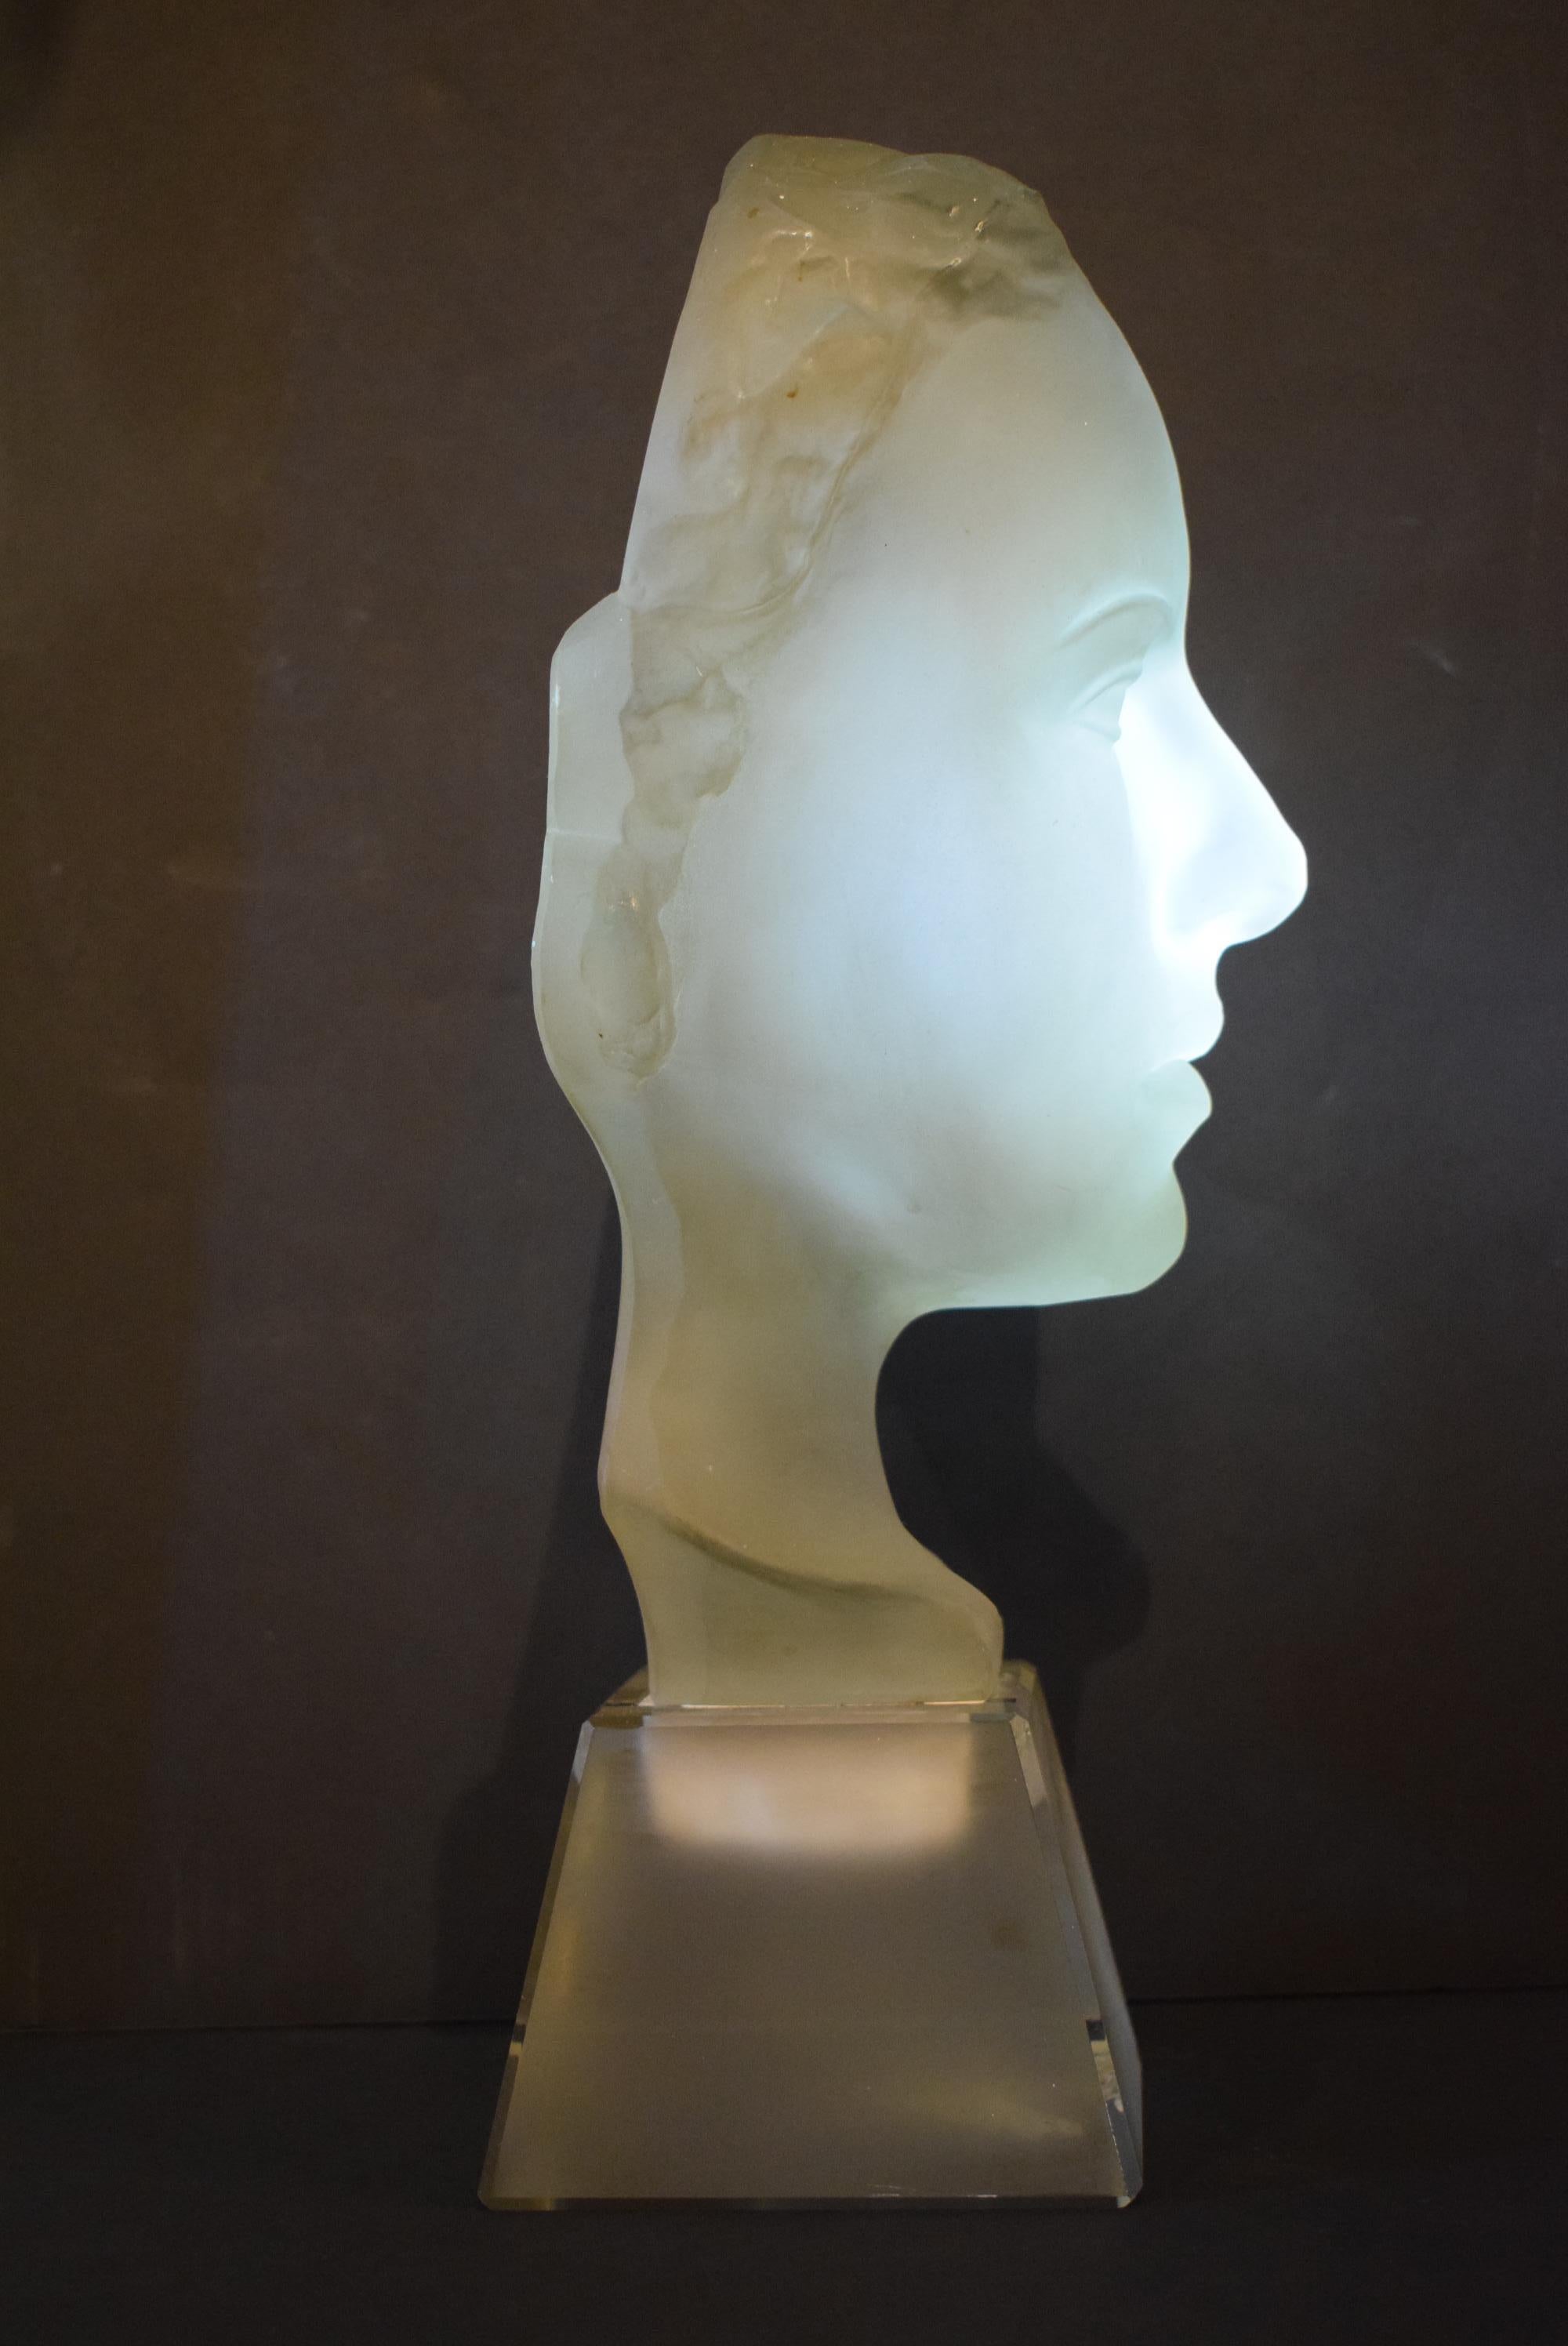 face sculpture for sale